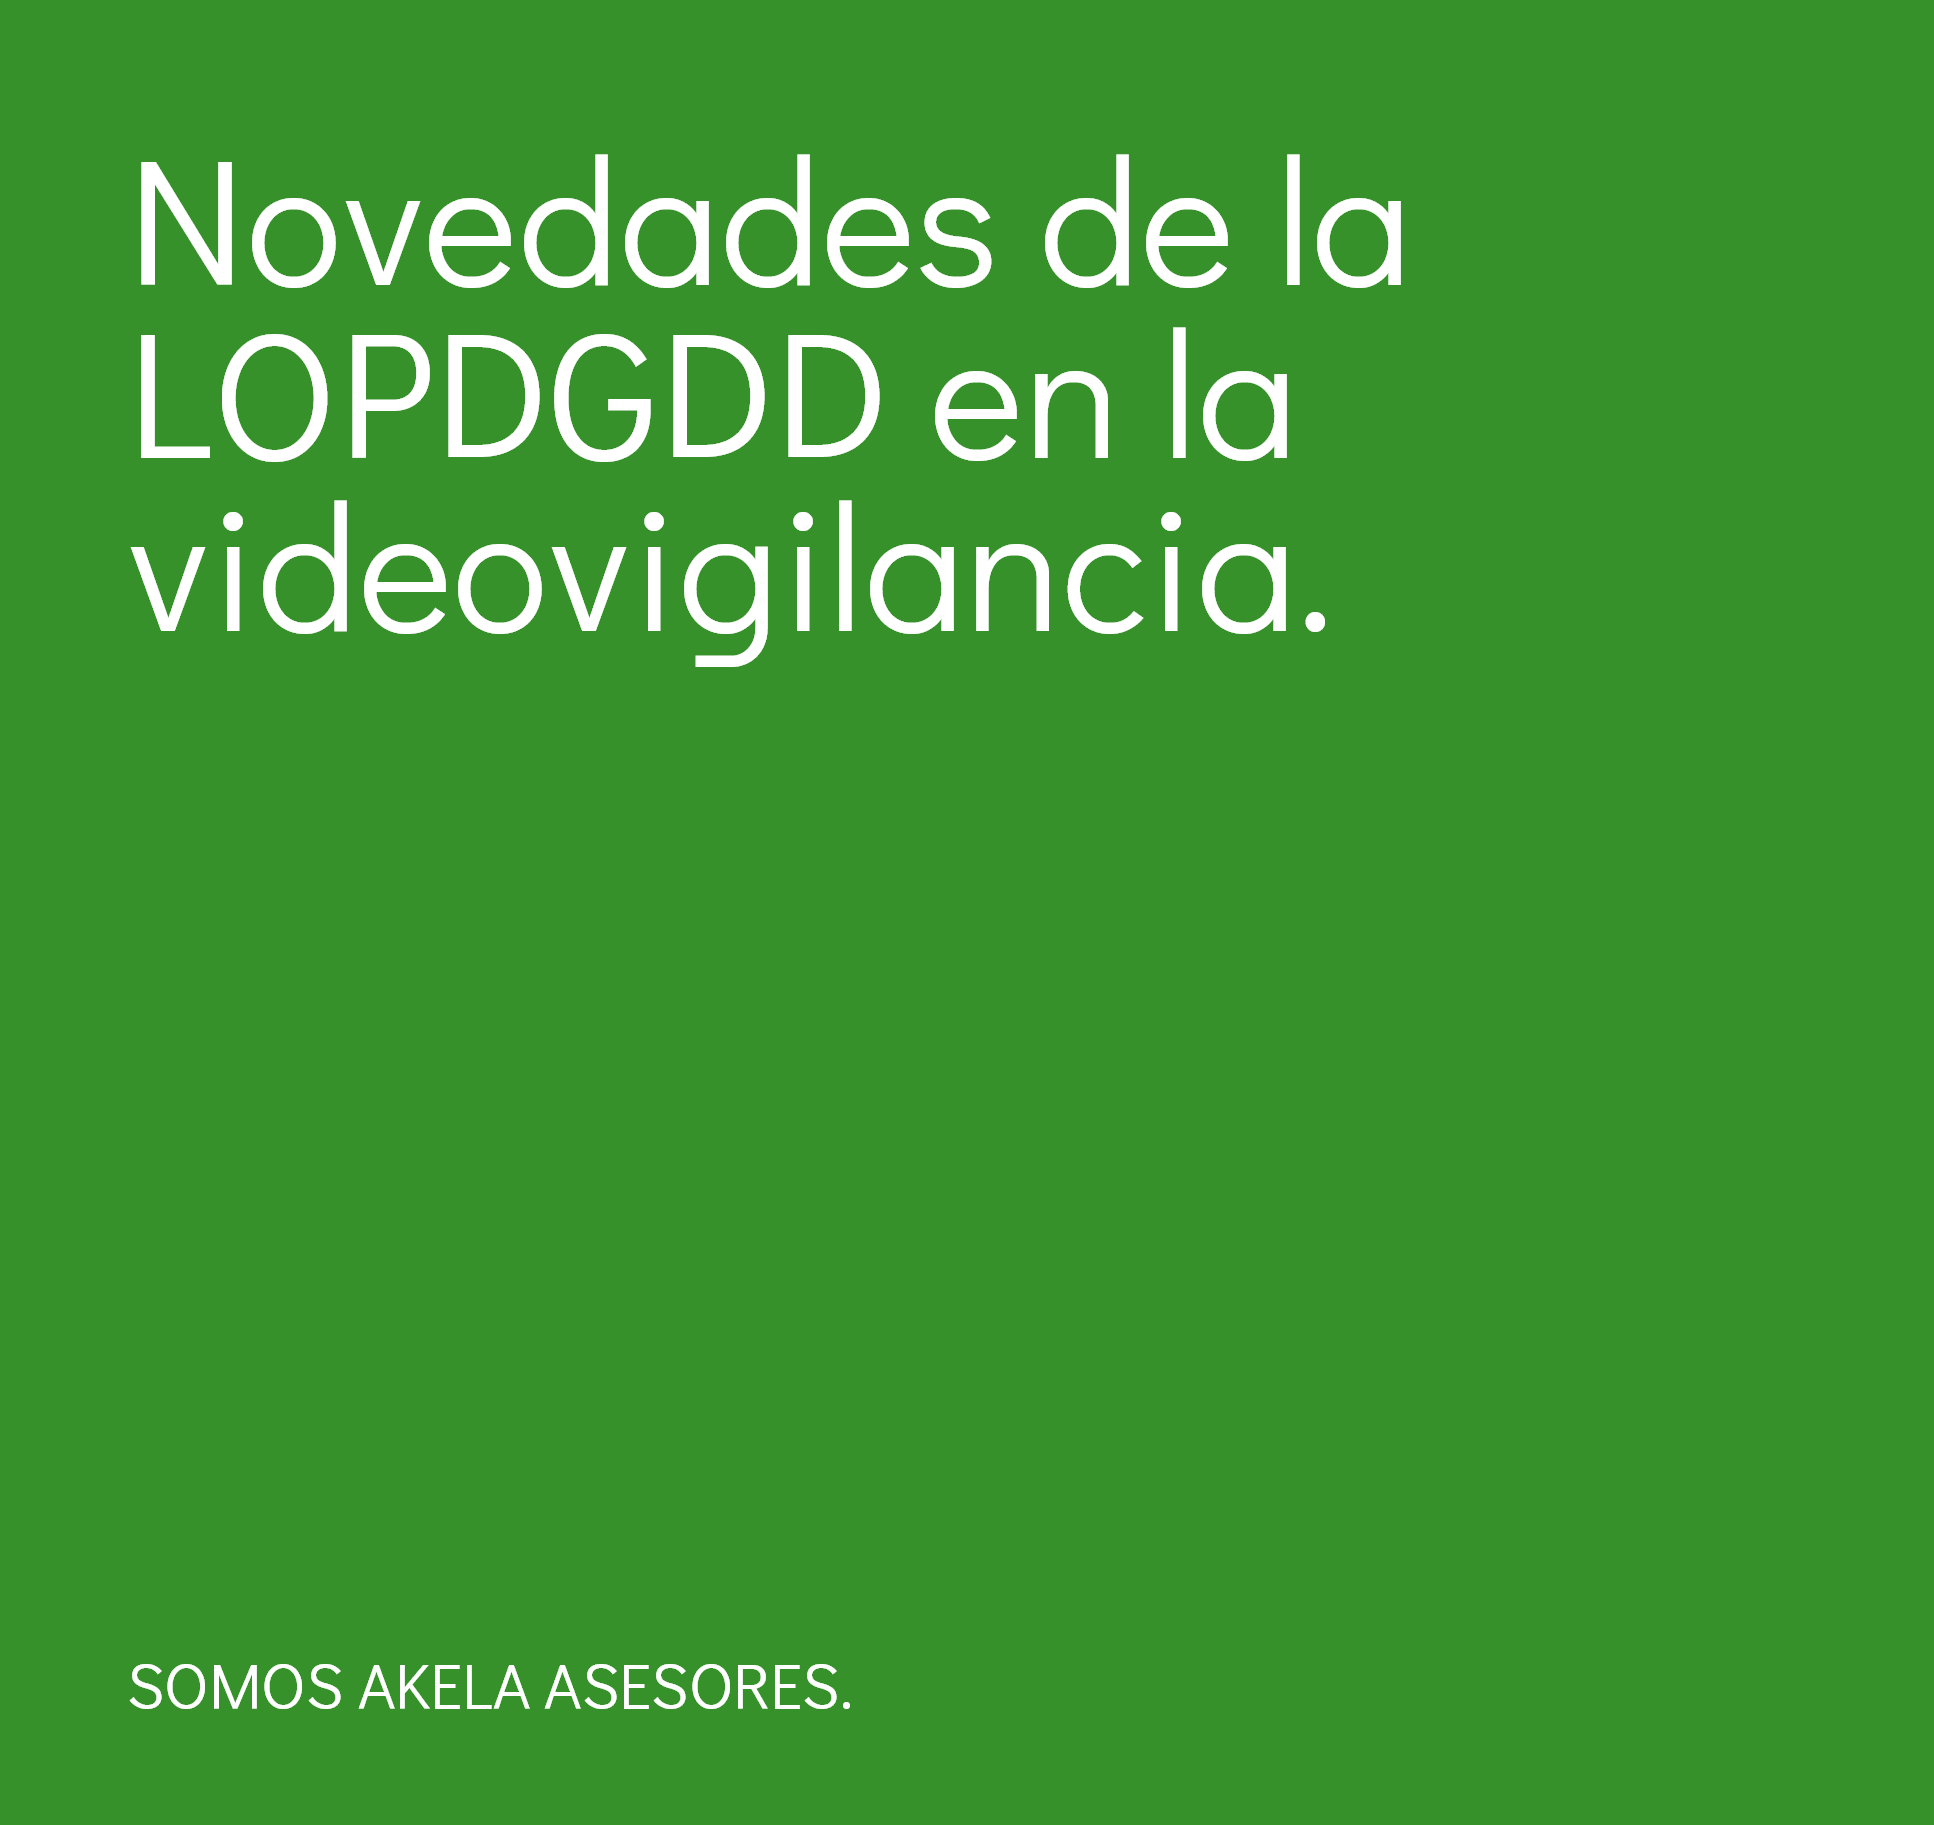 En este momento estás viendo Novedades de la LOPDGDD en la videovigilancia